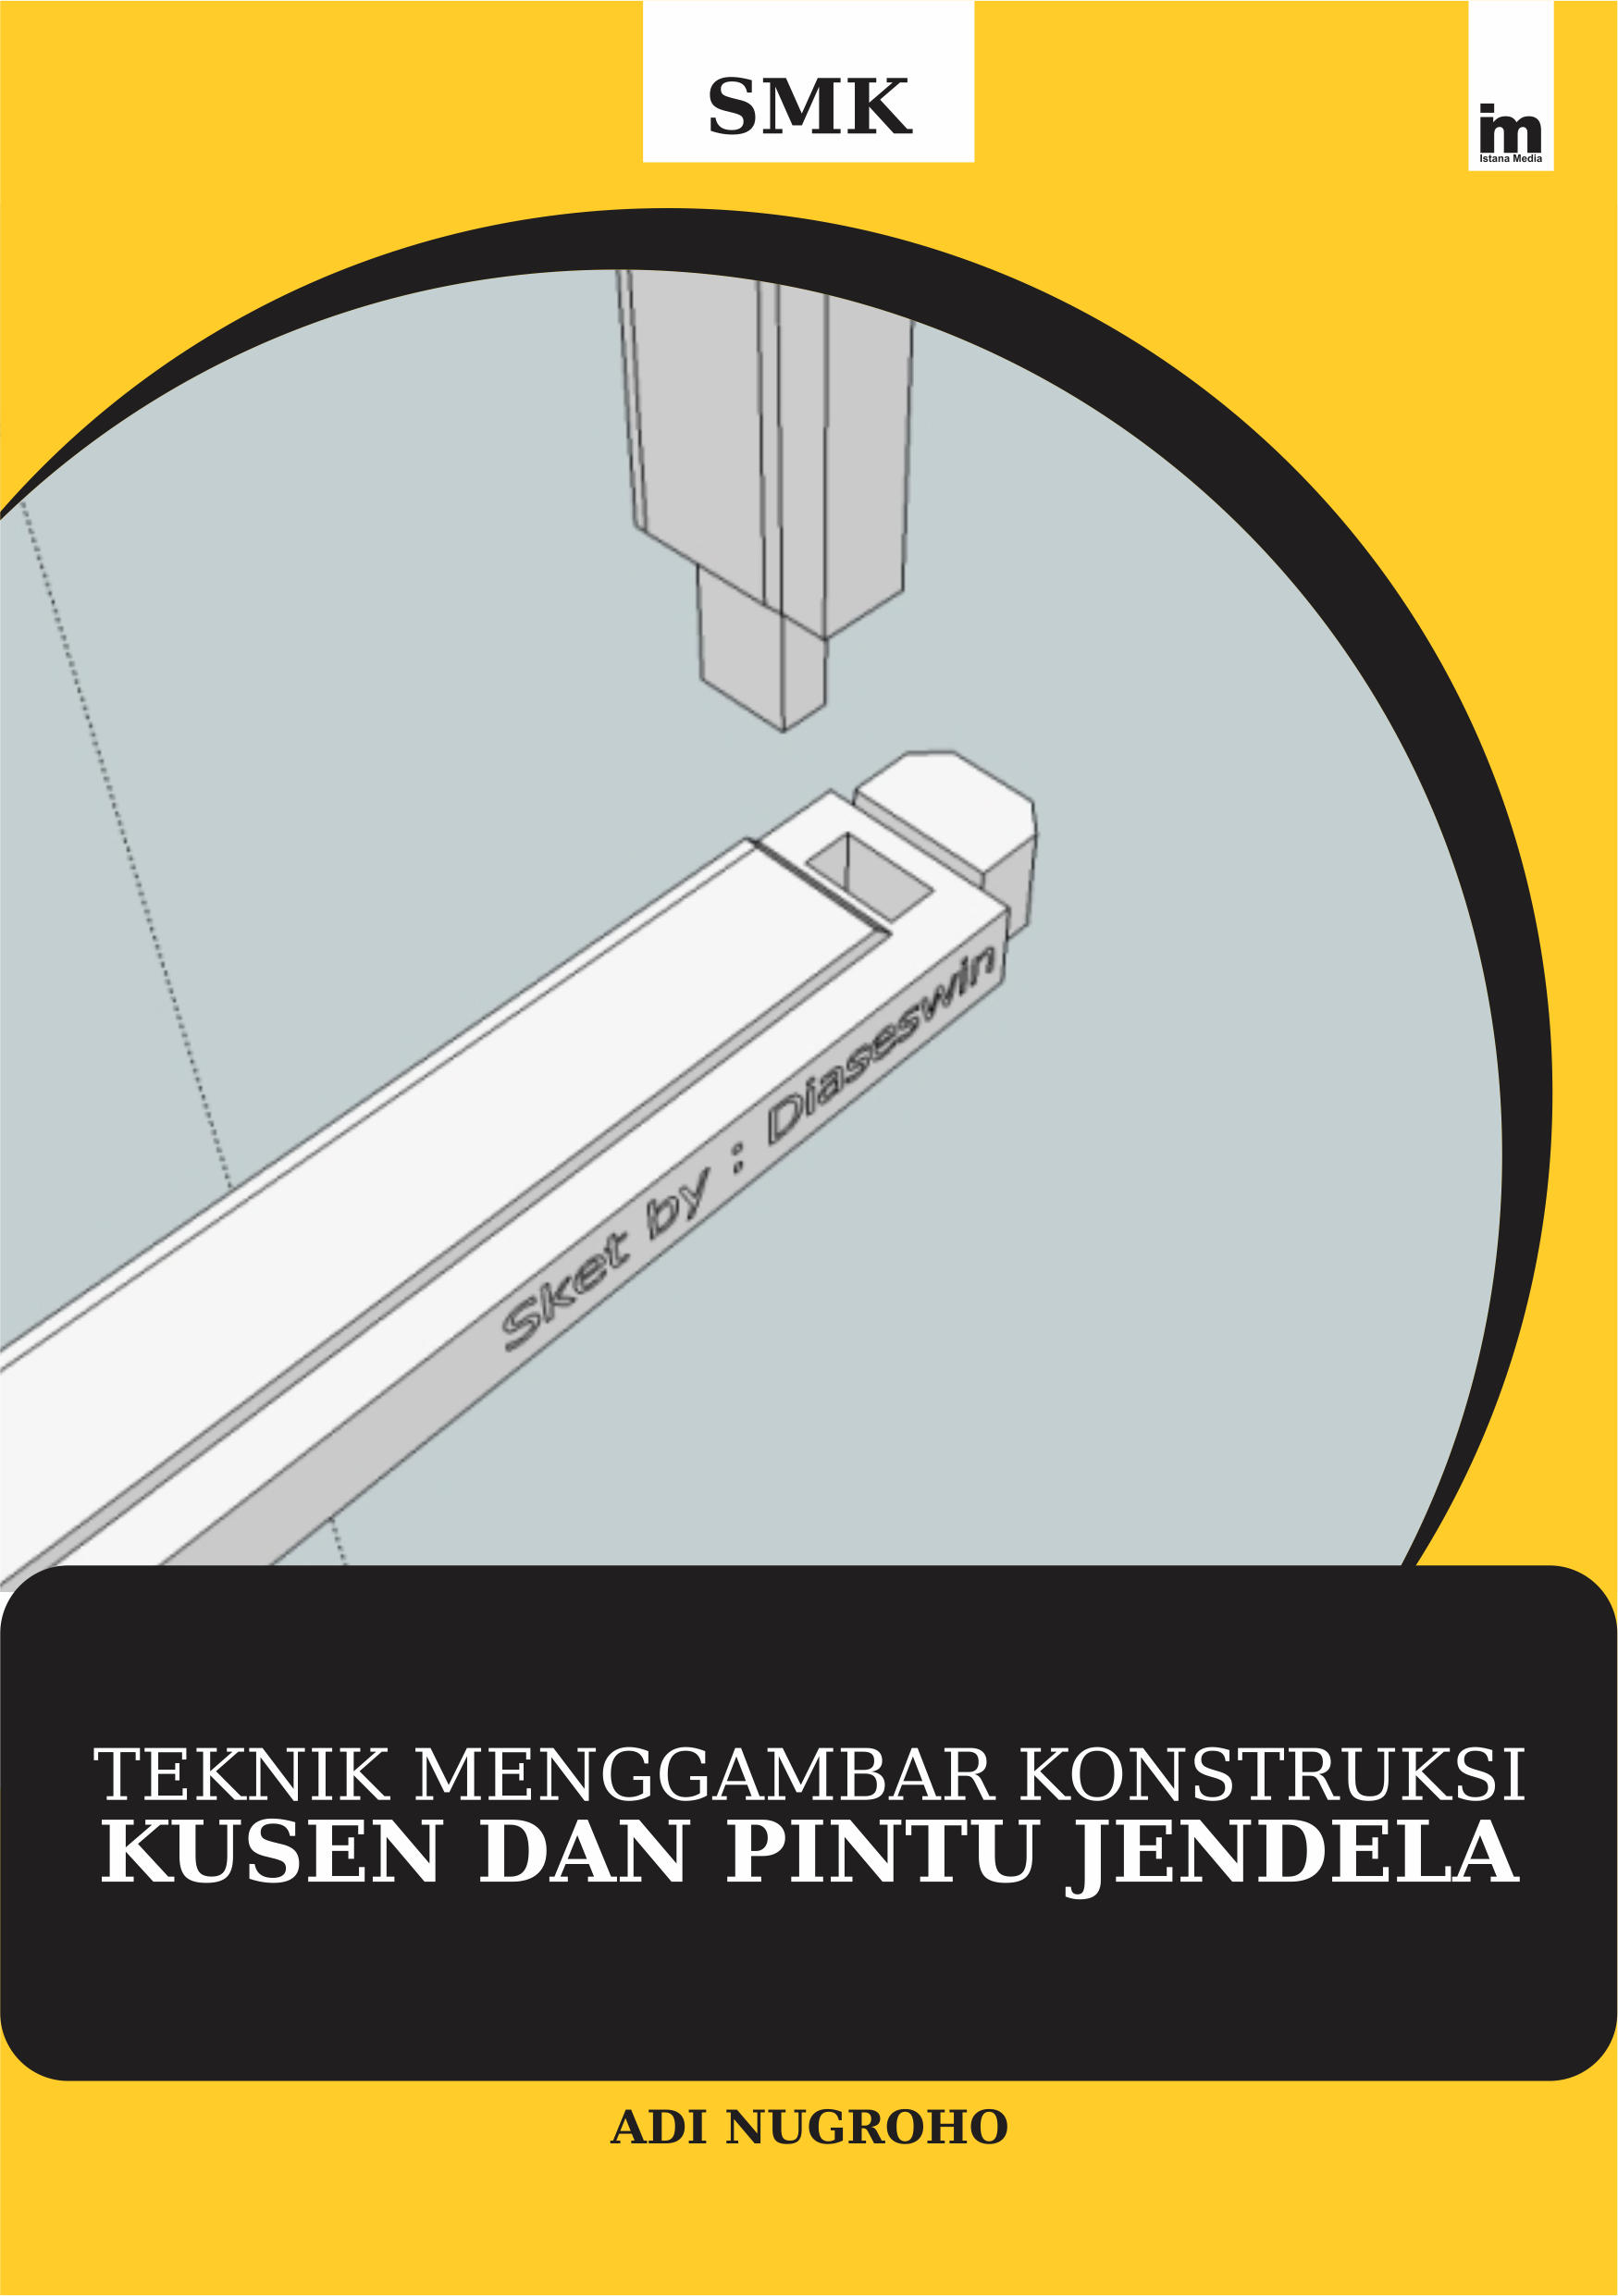 cover/(29-11-2019)tek-nik-menggambar-konstruksi-kusen-dan-pintu-jendela.png